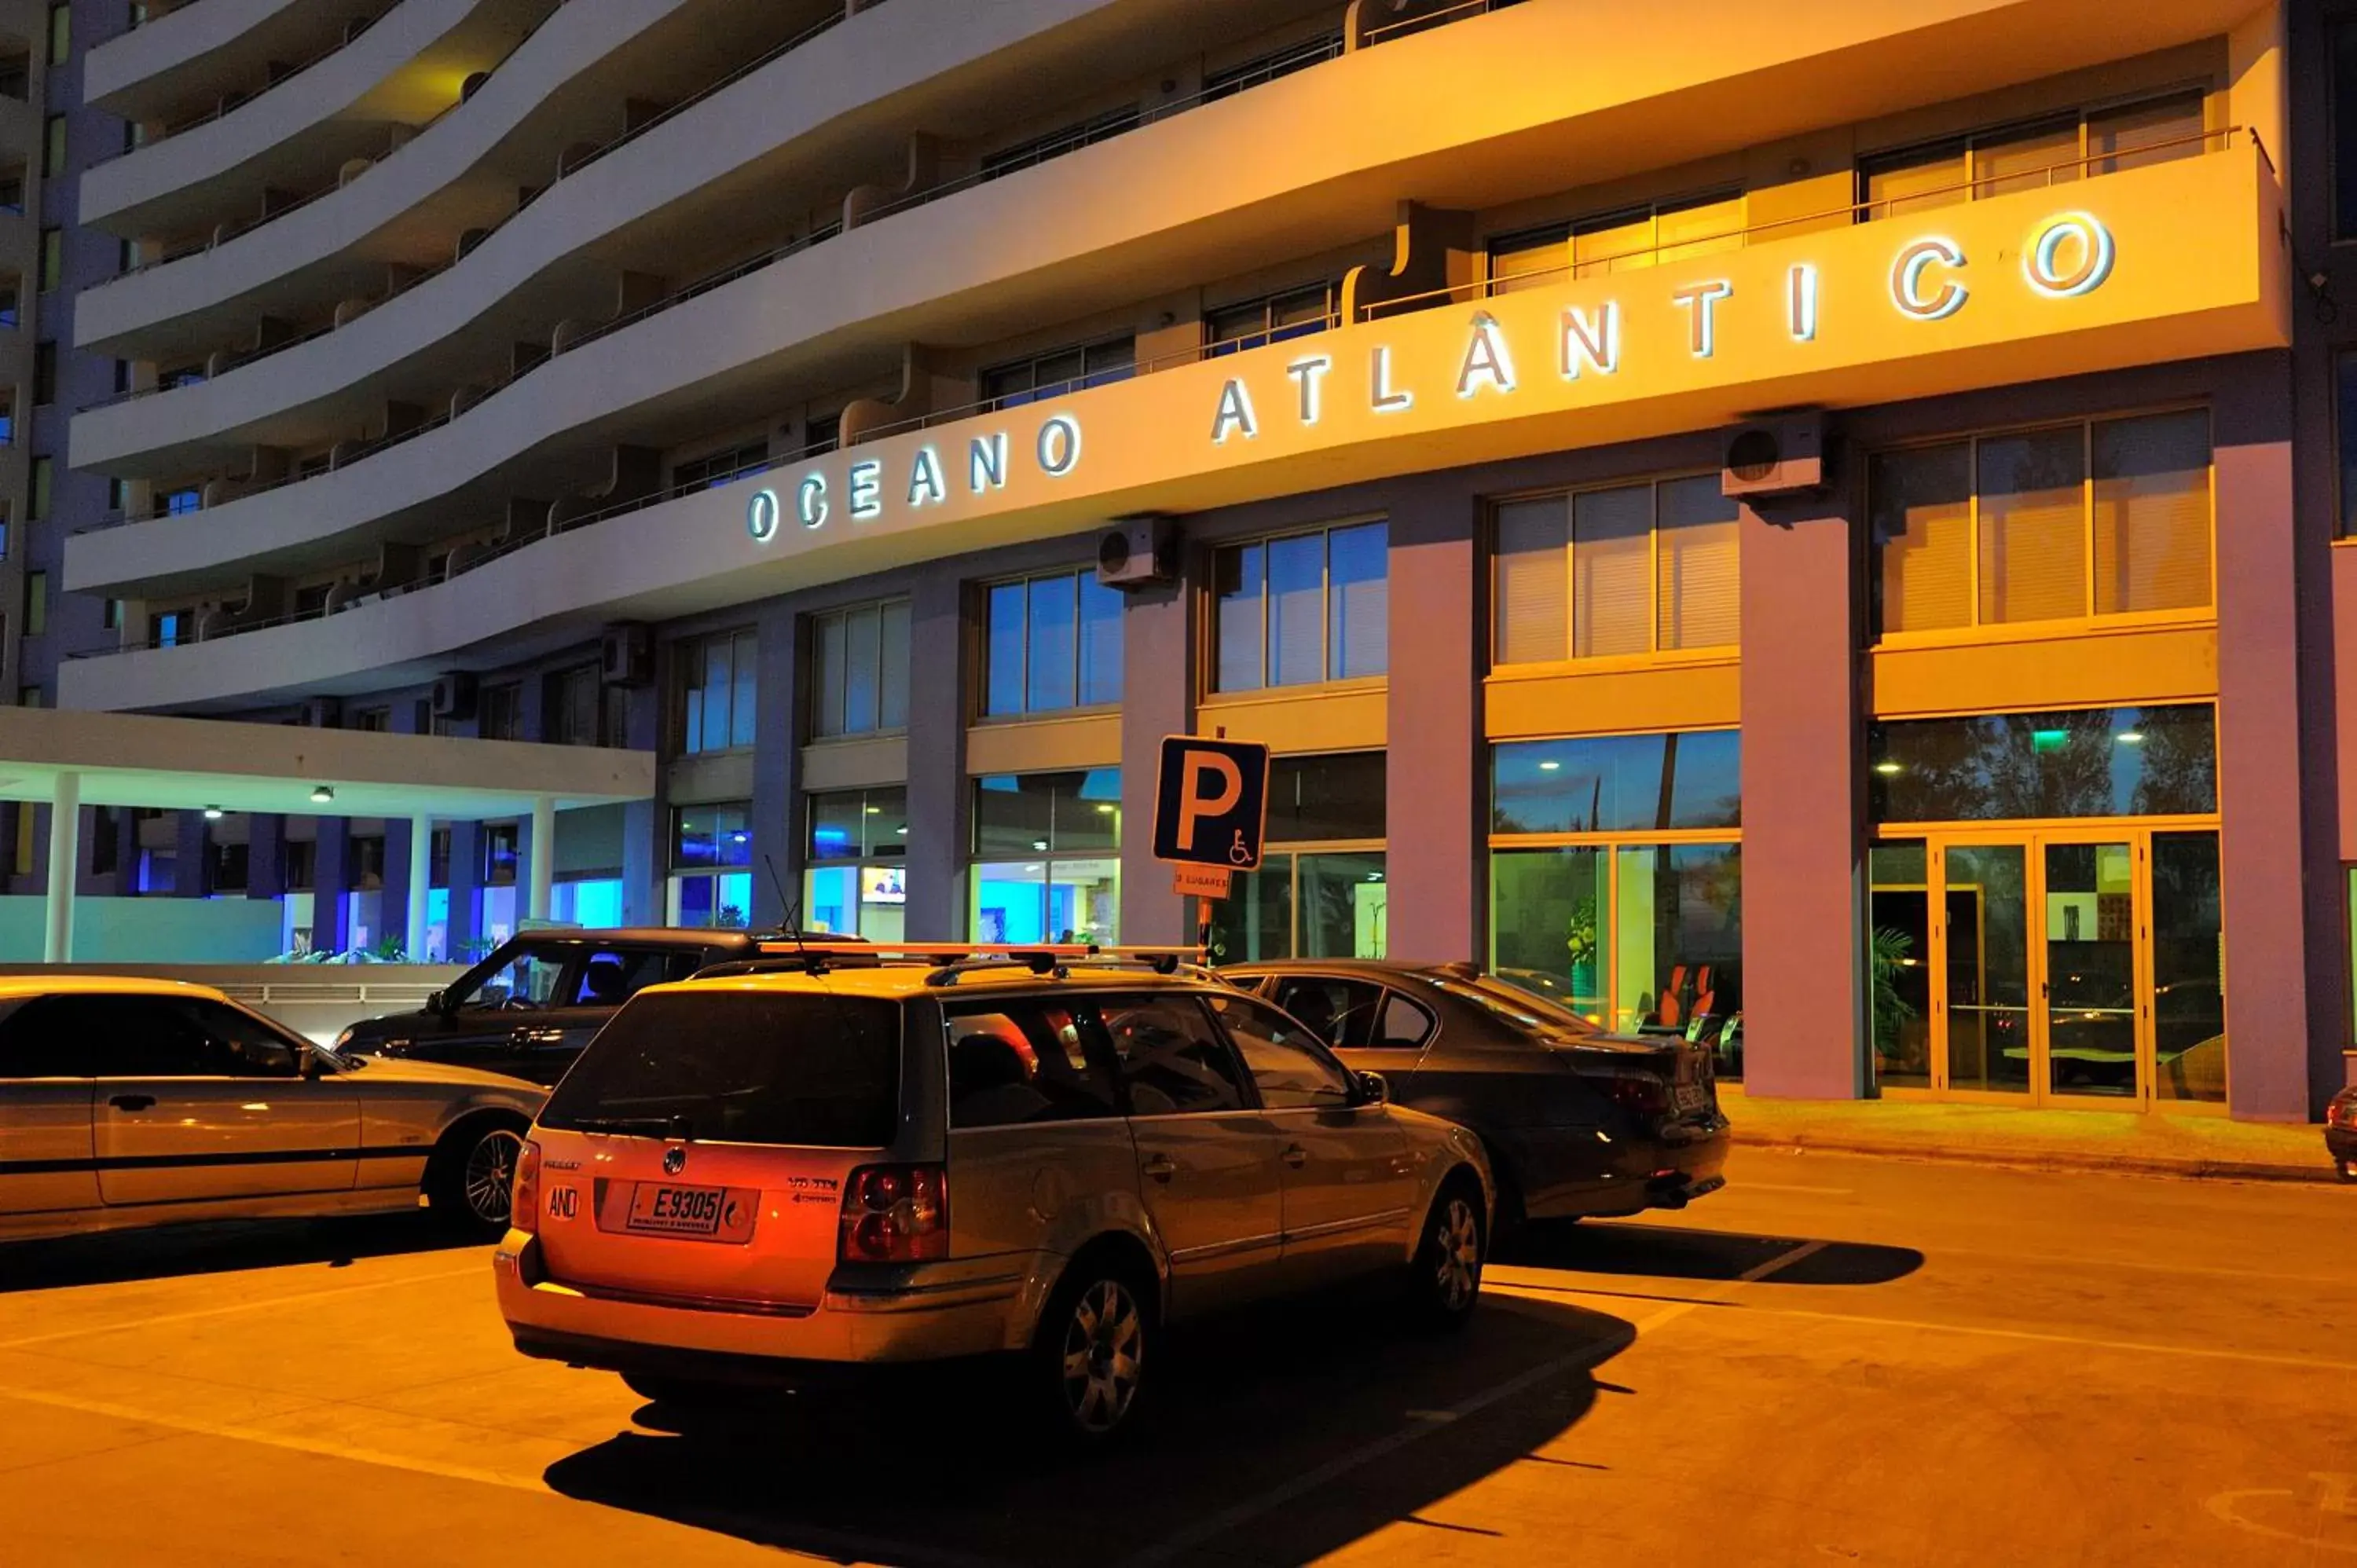 Facade/entrance in Oceano Atlantico Apartamentos Turisticos